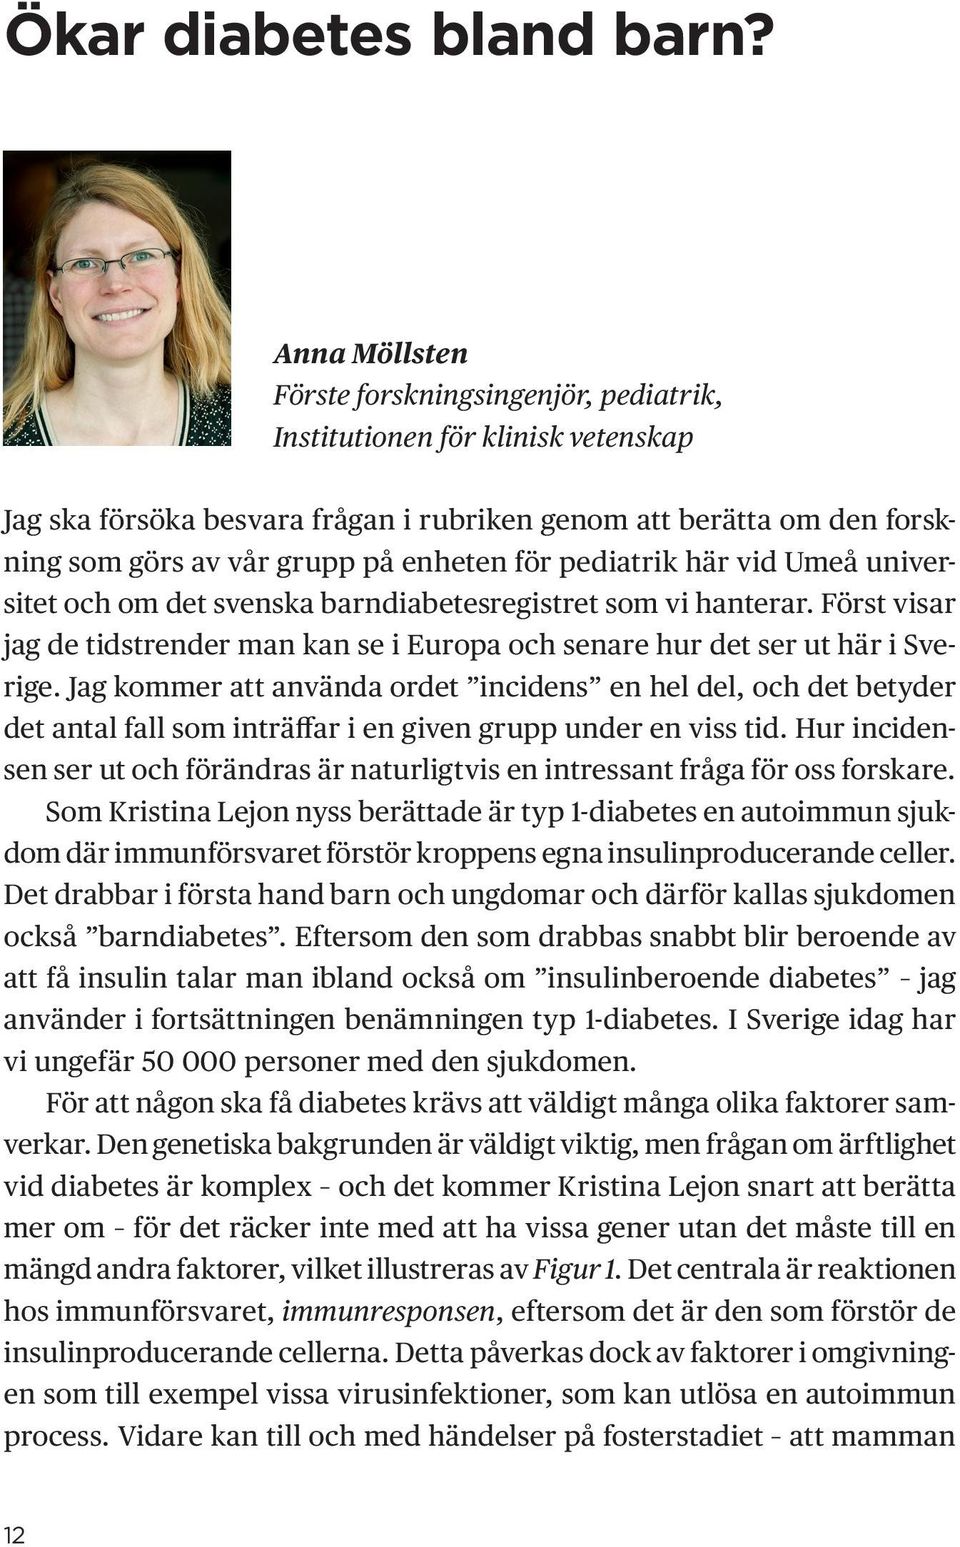 för pediatrik här vid Umeå universitet och om det svenska barndiabetesregistret som vi hanterar. Först visar jag de tidstrender man kan se i Europa och senare hur det ser ut här i Sverige.